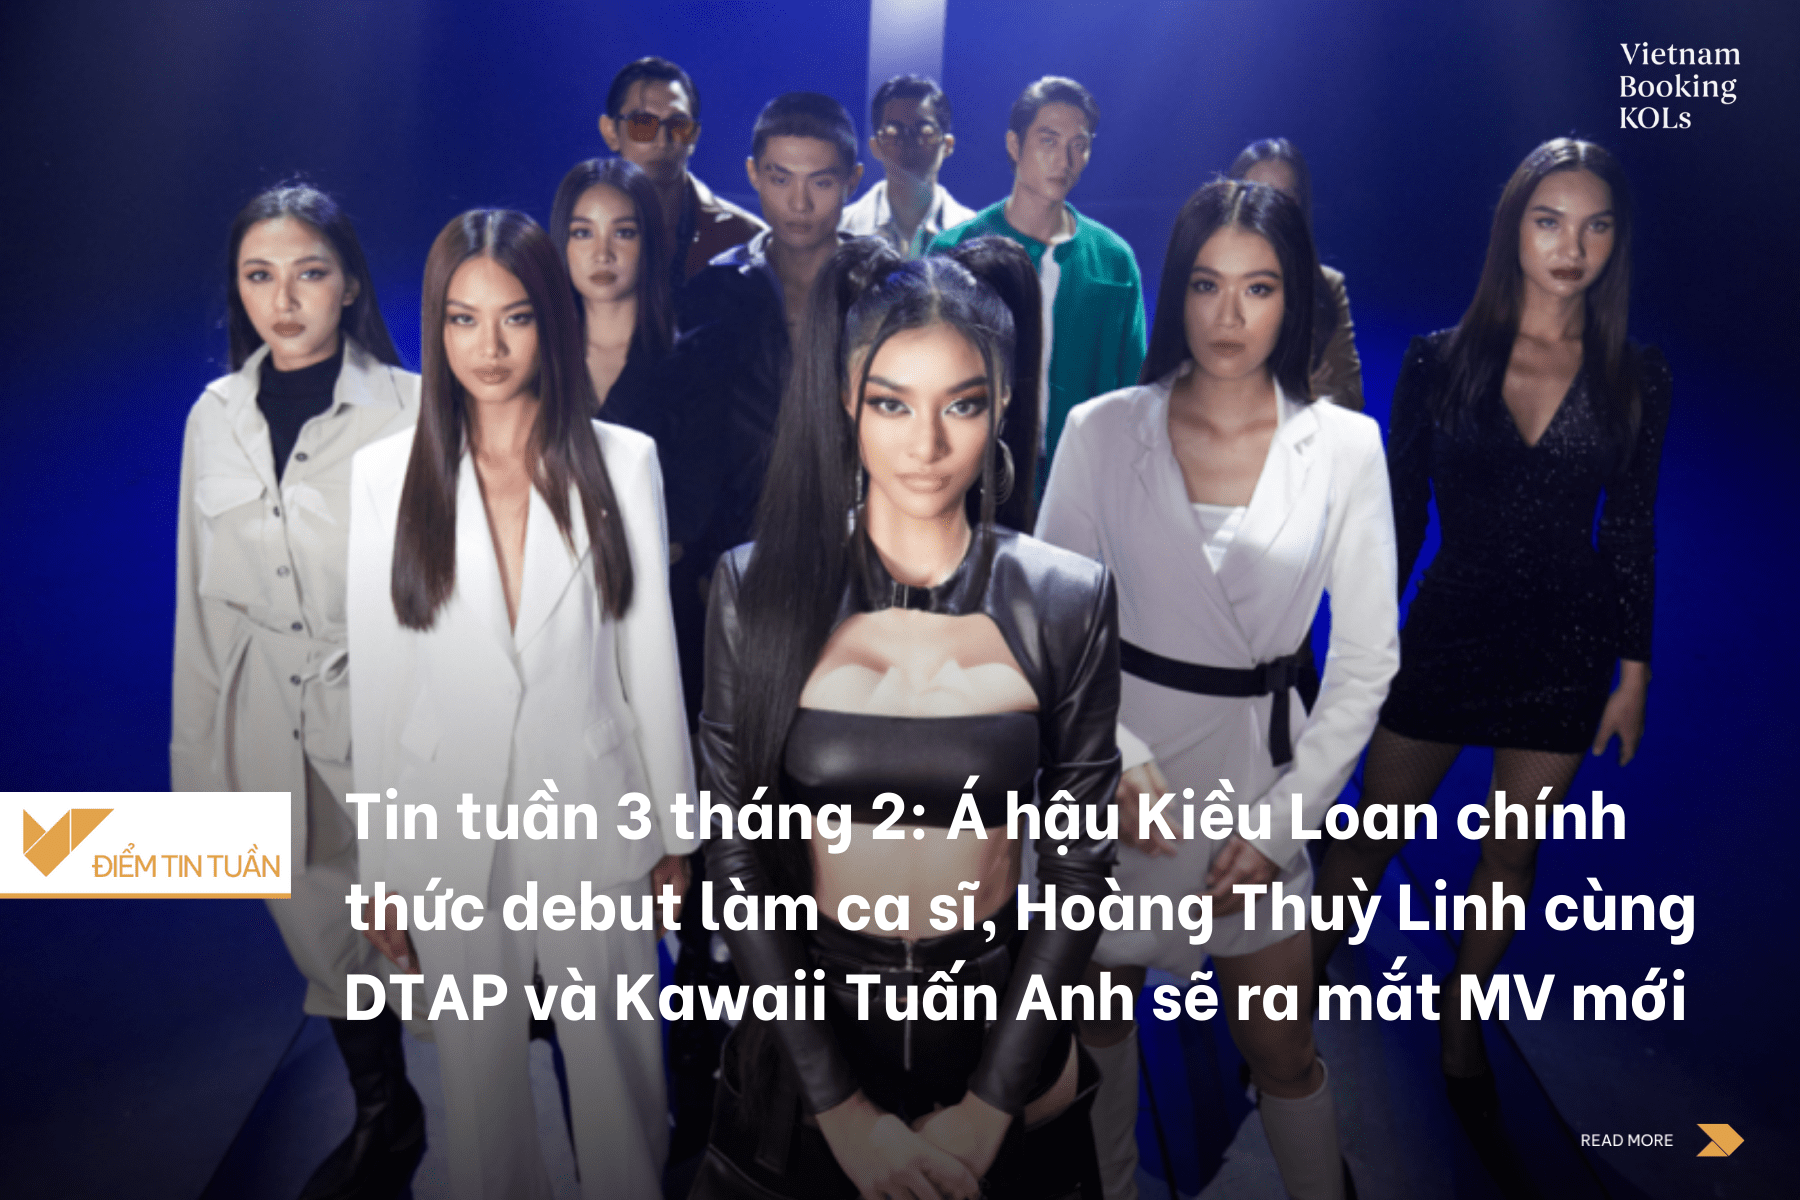 Tin tuần 3 tháng 2: Á hậu Kiều Loan chính thức debut làm ca sĩ, Hoàng Thuỳ Linh cùng DTAP và Kawaii Tuấn Anh sẽ ra mắt MV mới “See Tình”